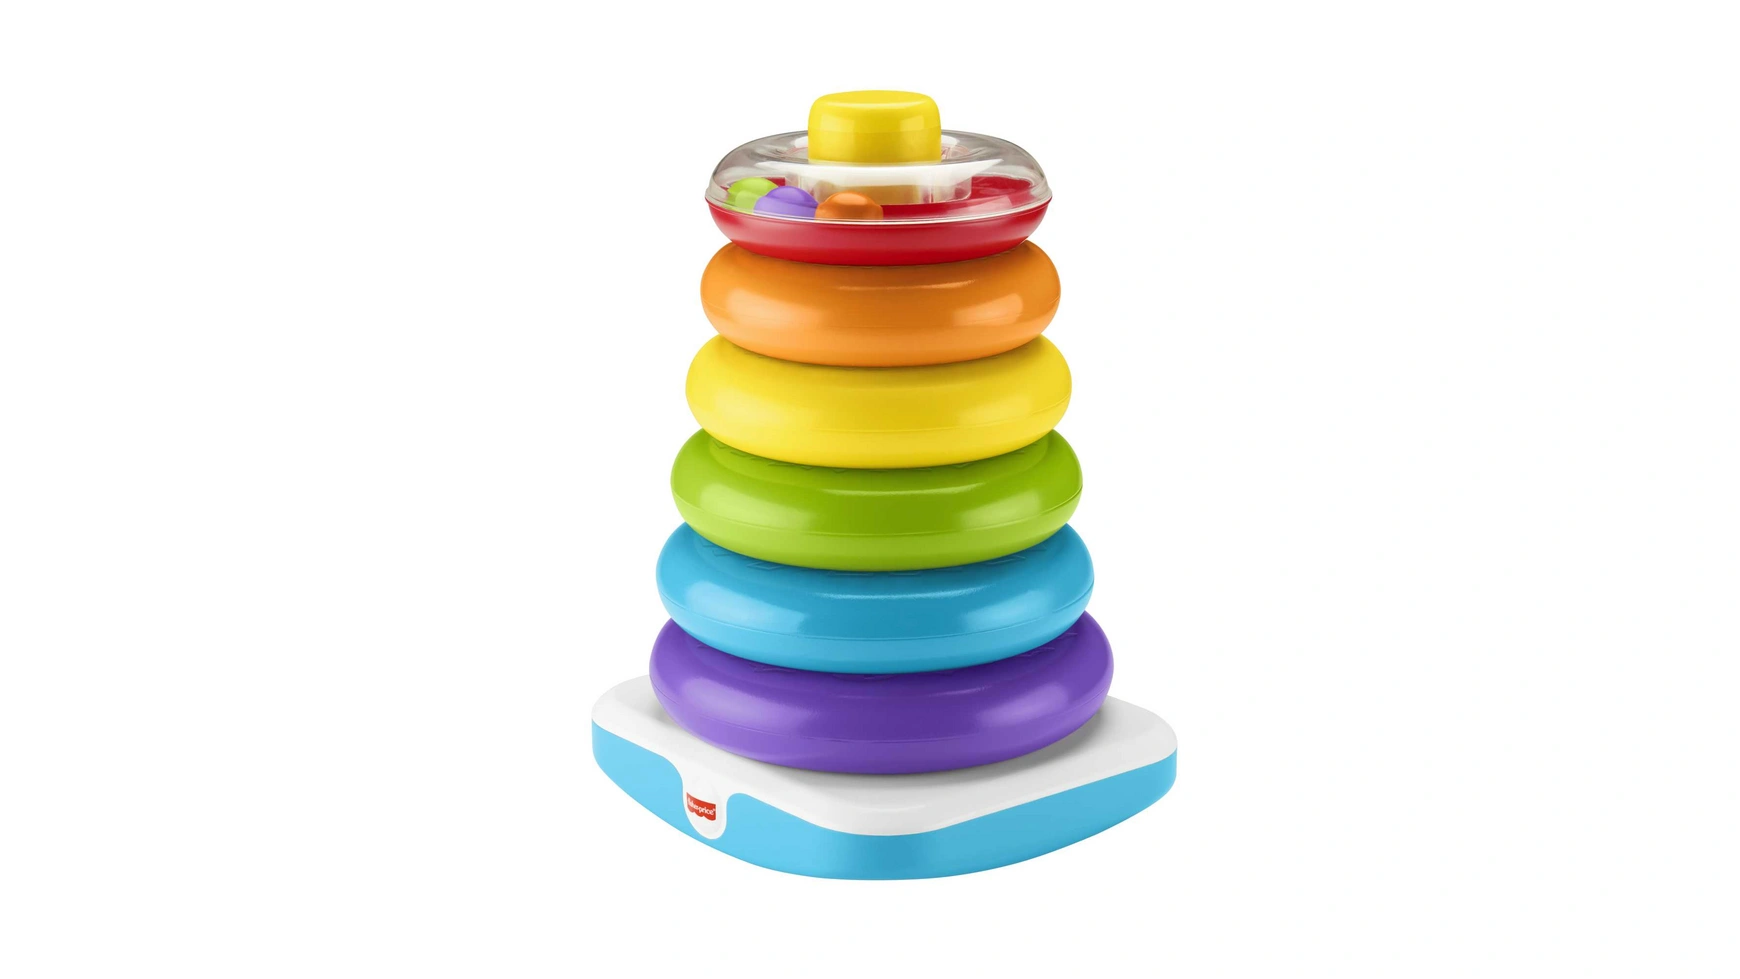 цена Гигантская цветная кольцевая пирамида Fisher Price, подключаемая игрушка, штабелируемая башня